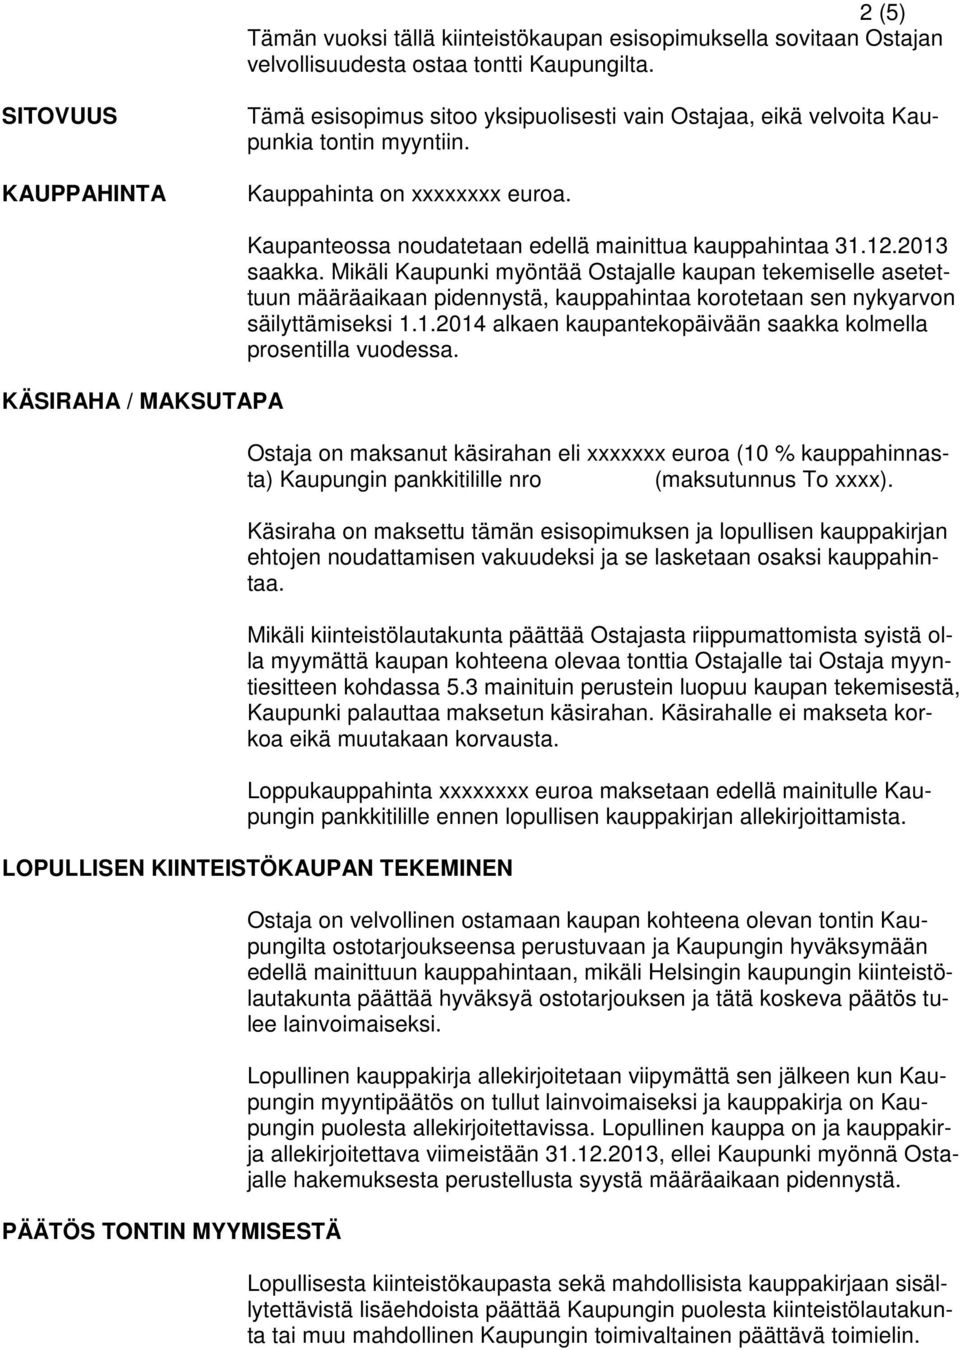 KÄSIRAHA / MAKSUTAPA Kaupanteossa noudatetaan edellä mainittua kauppahintaa 31.12.2013 saakka.